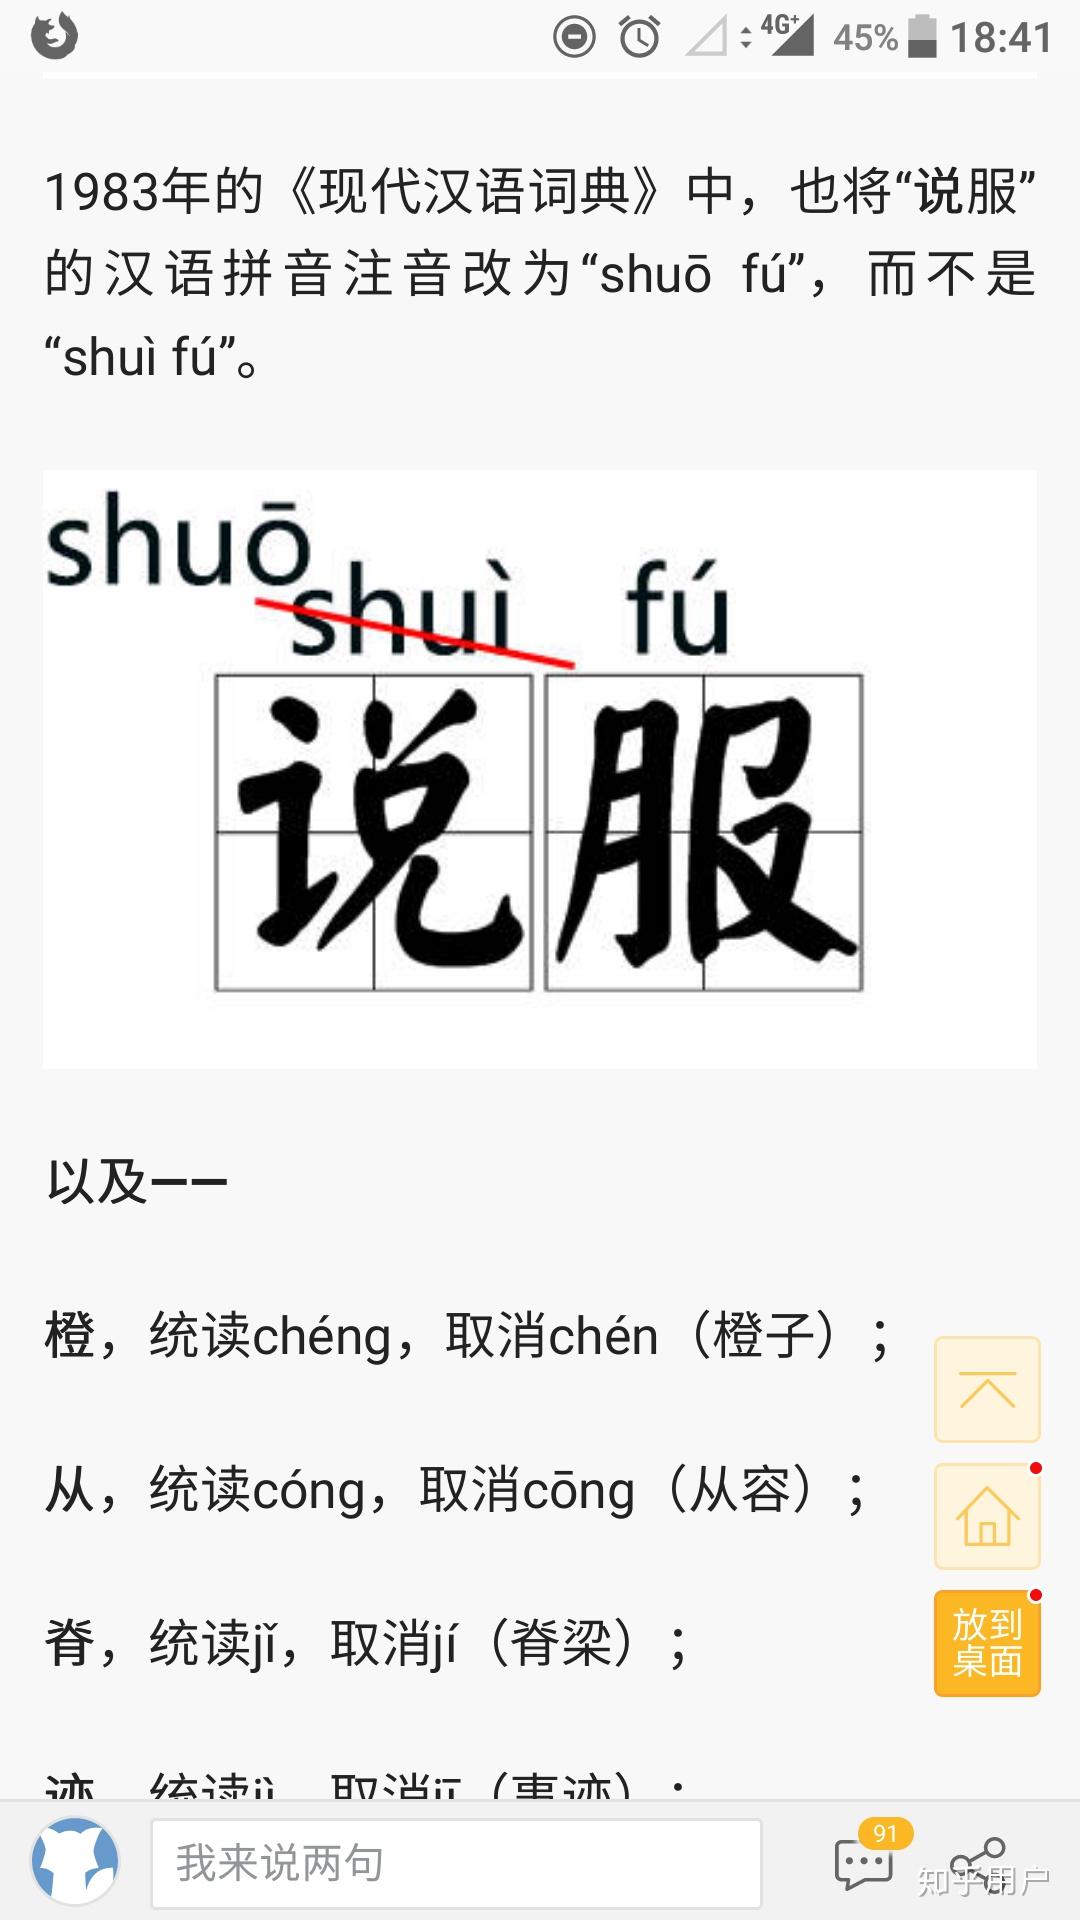 「说服」读作 shuōfú 还是 shuìfú?